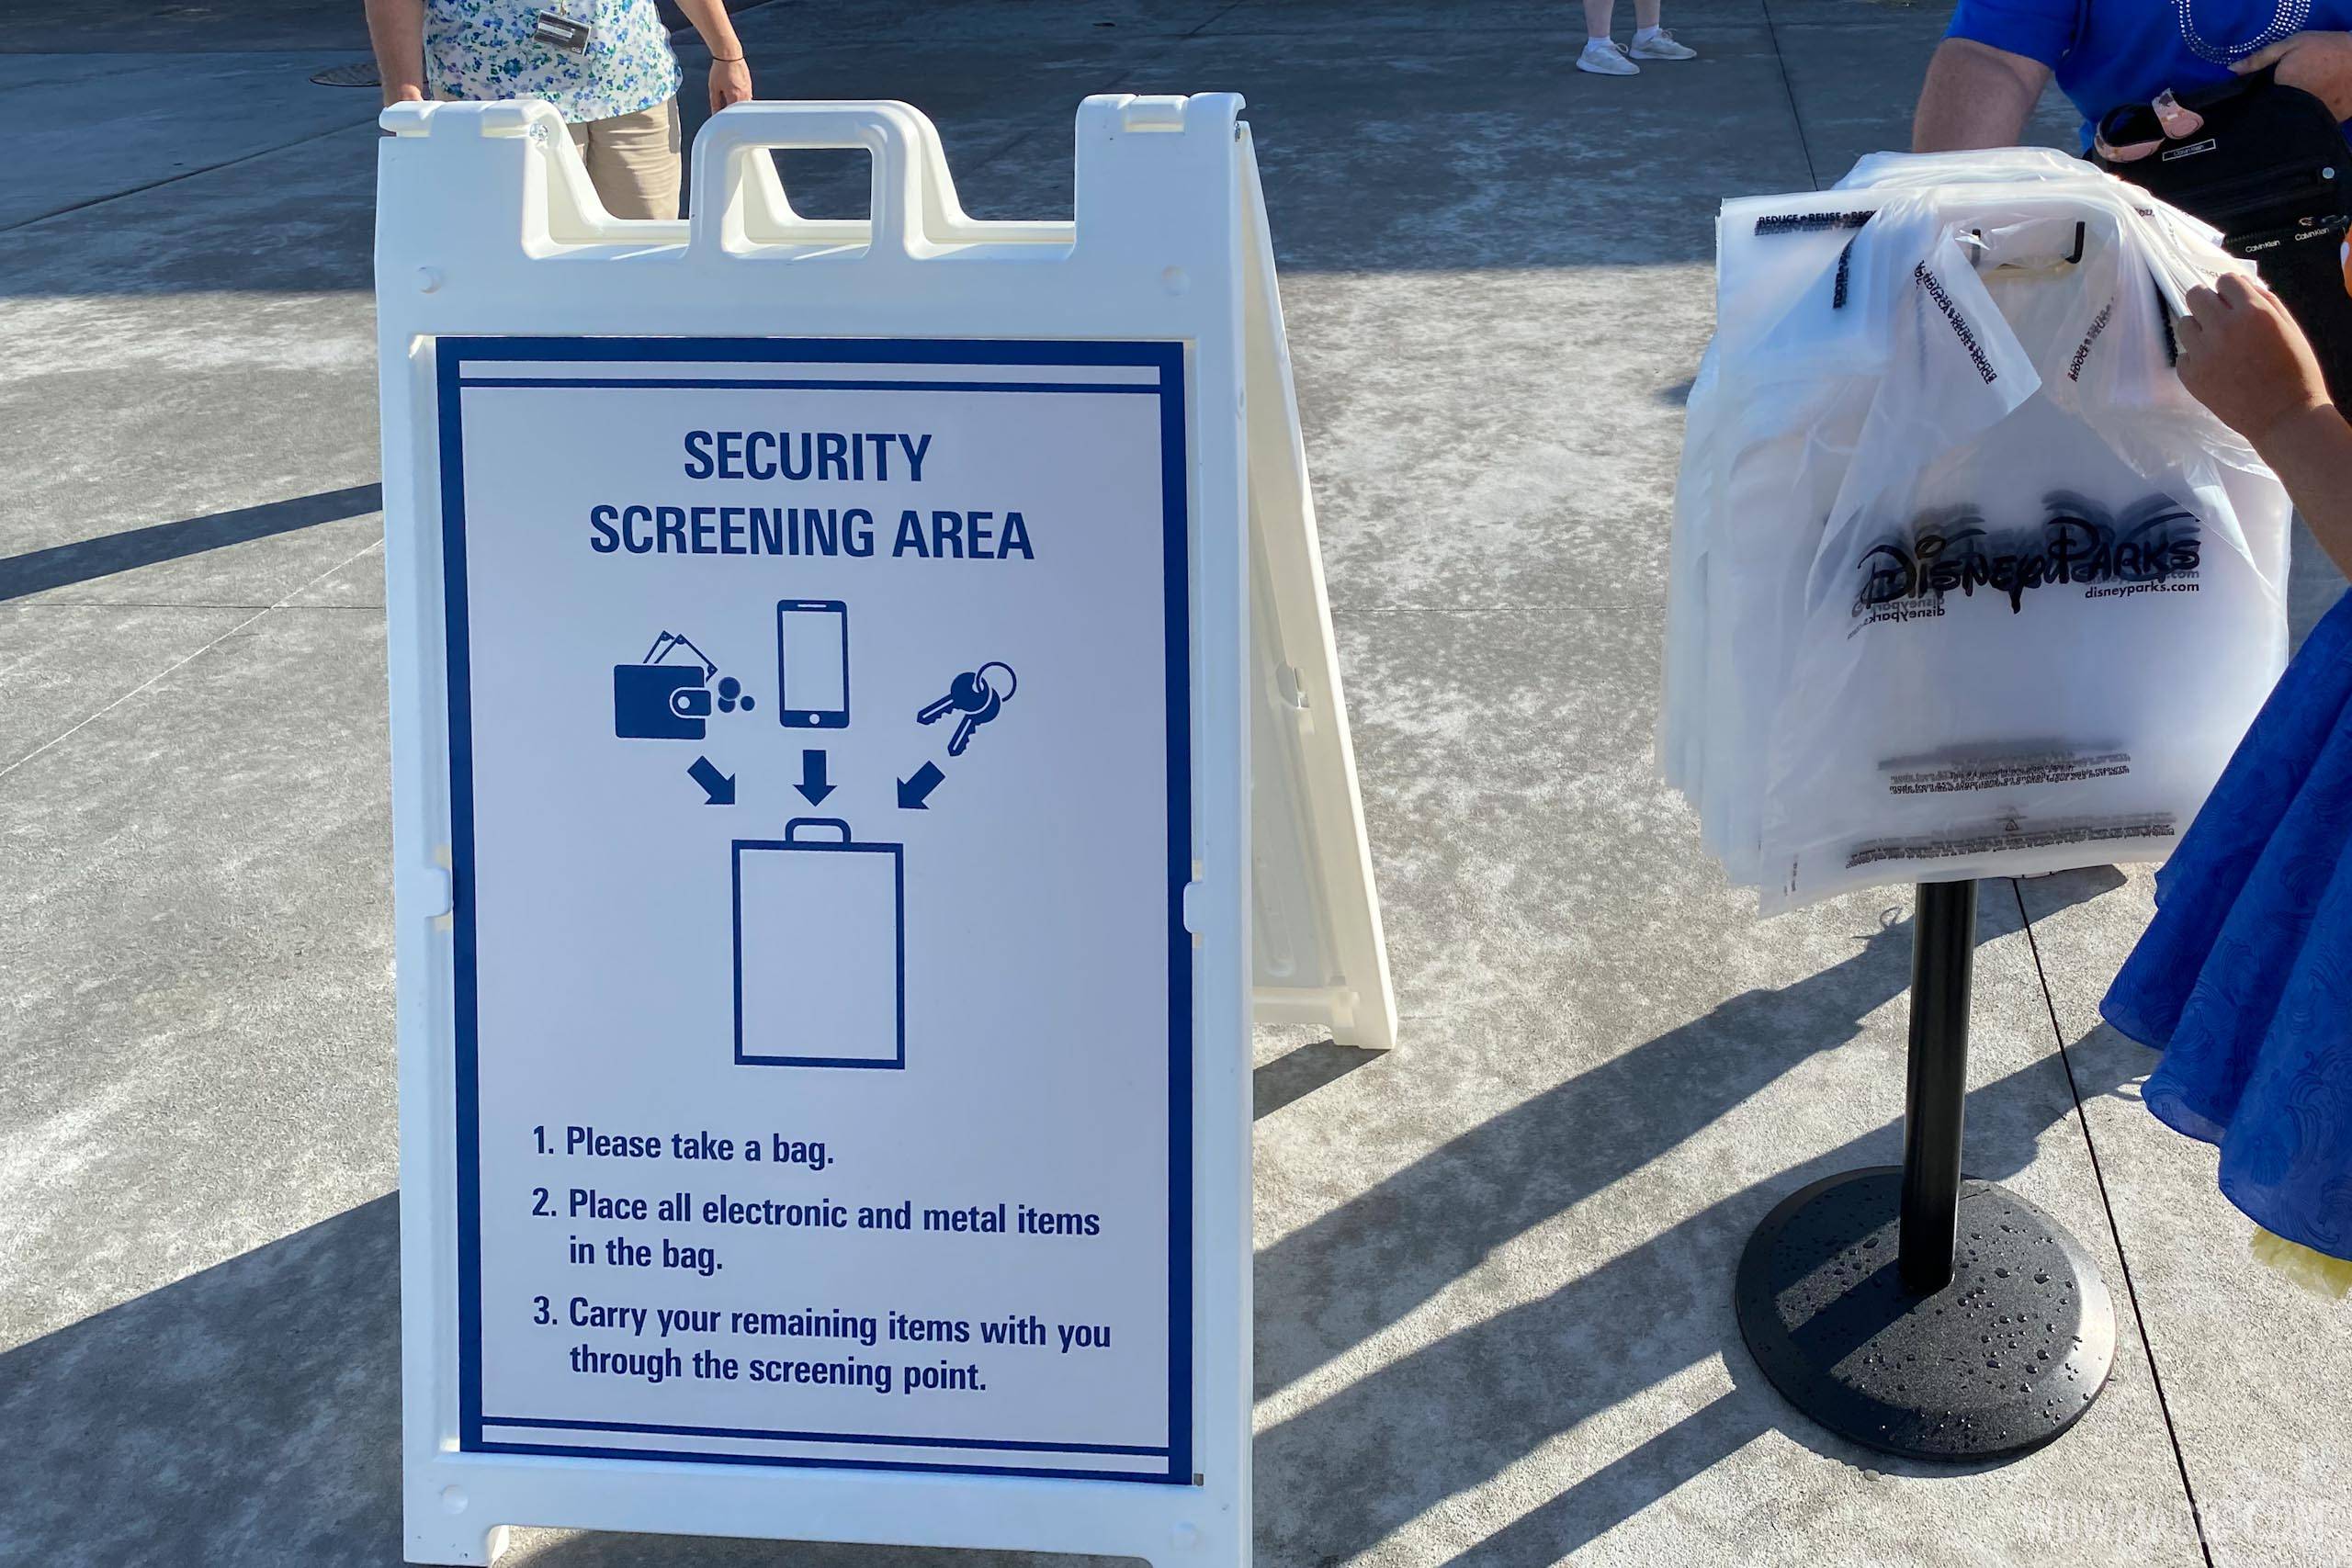 Security screening area